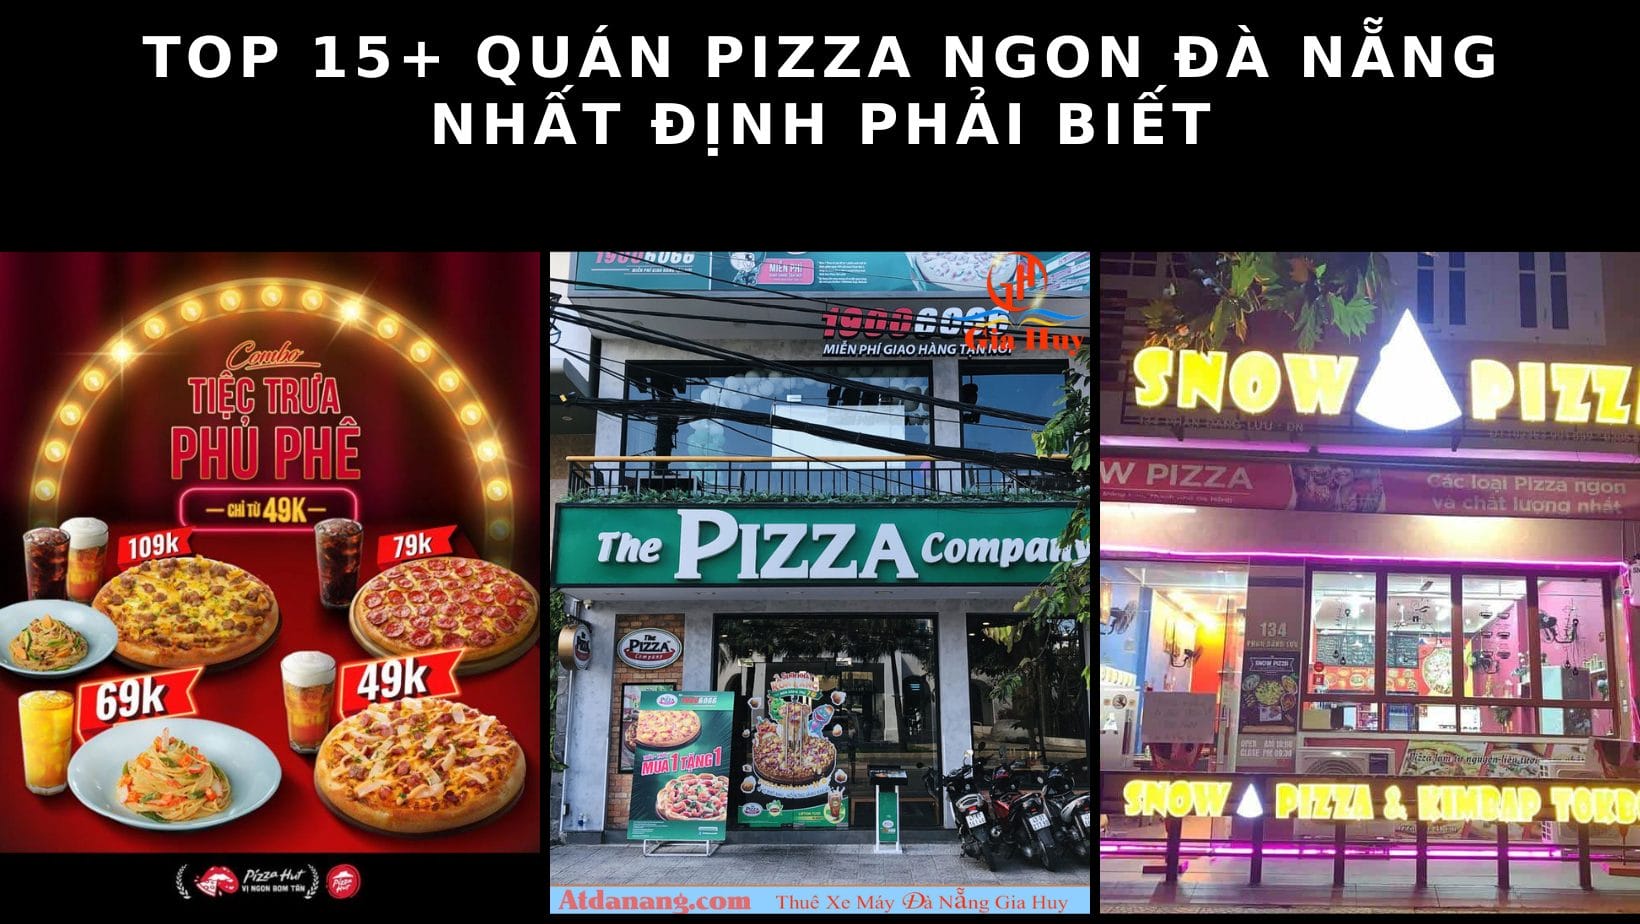 Top 15+ quán pizza ngon Đà Nẵng nhất định phải biết